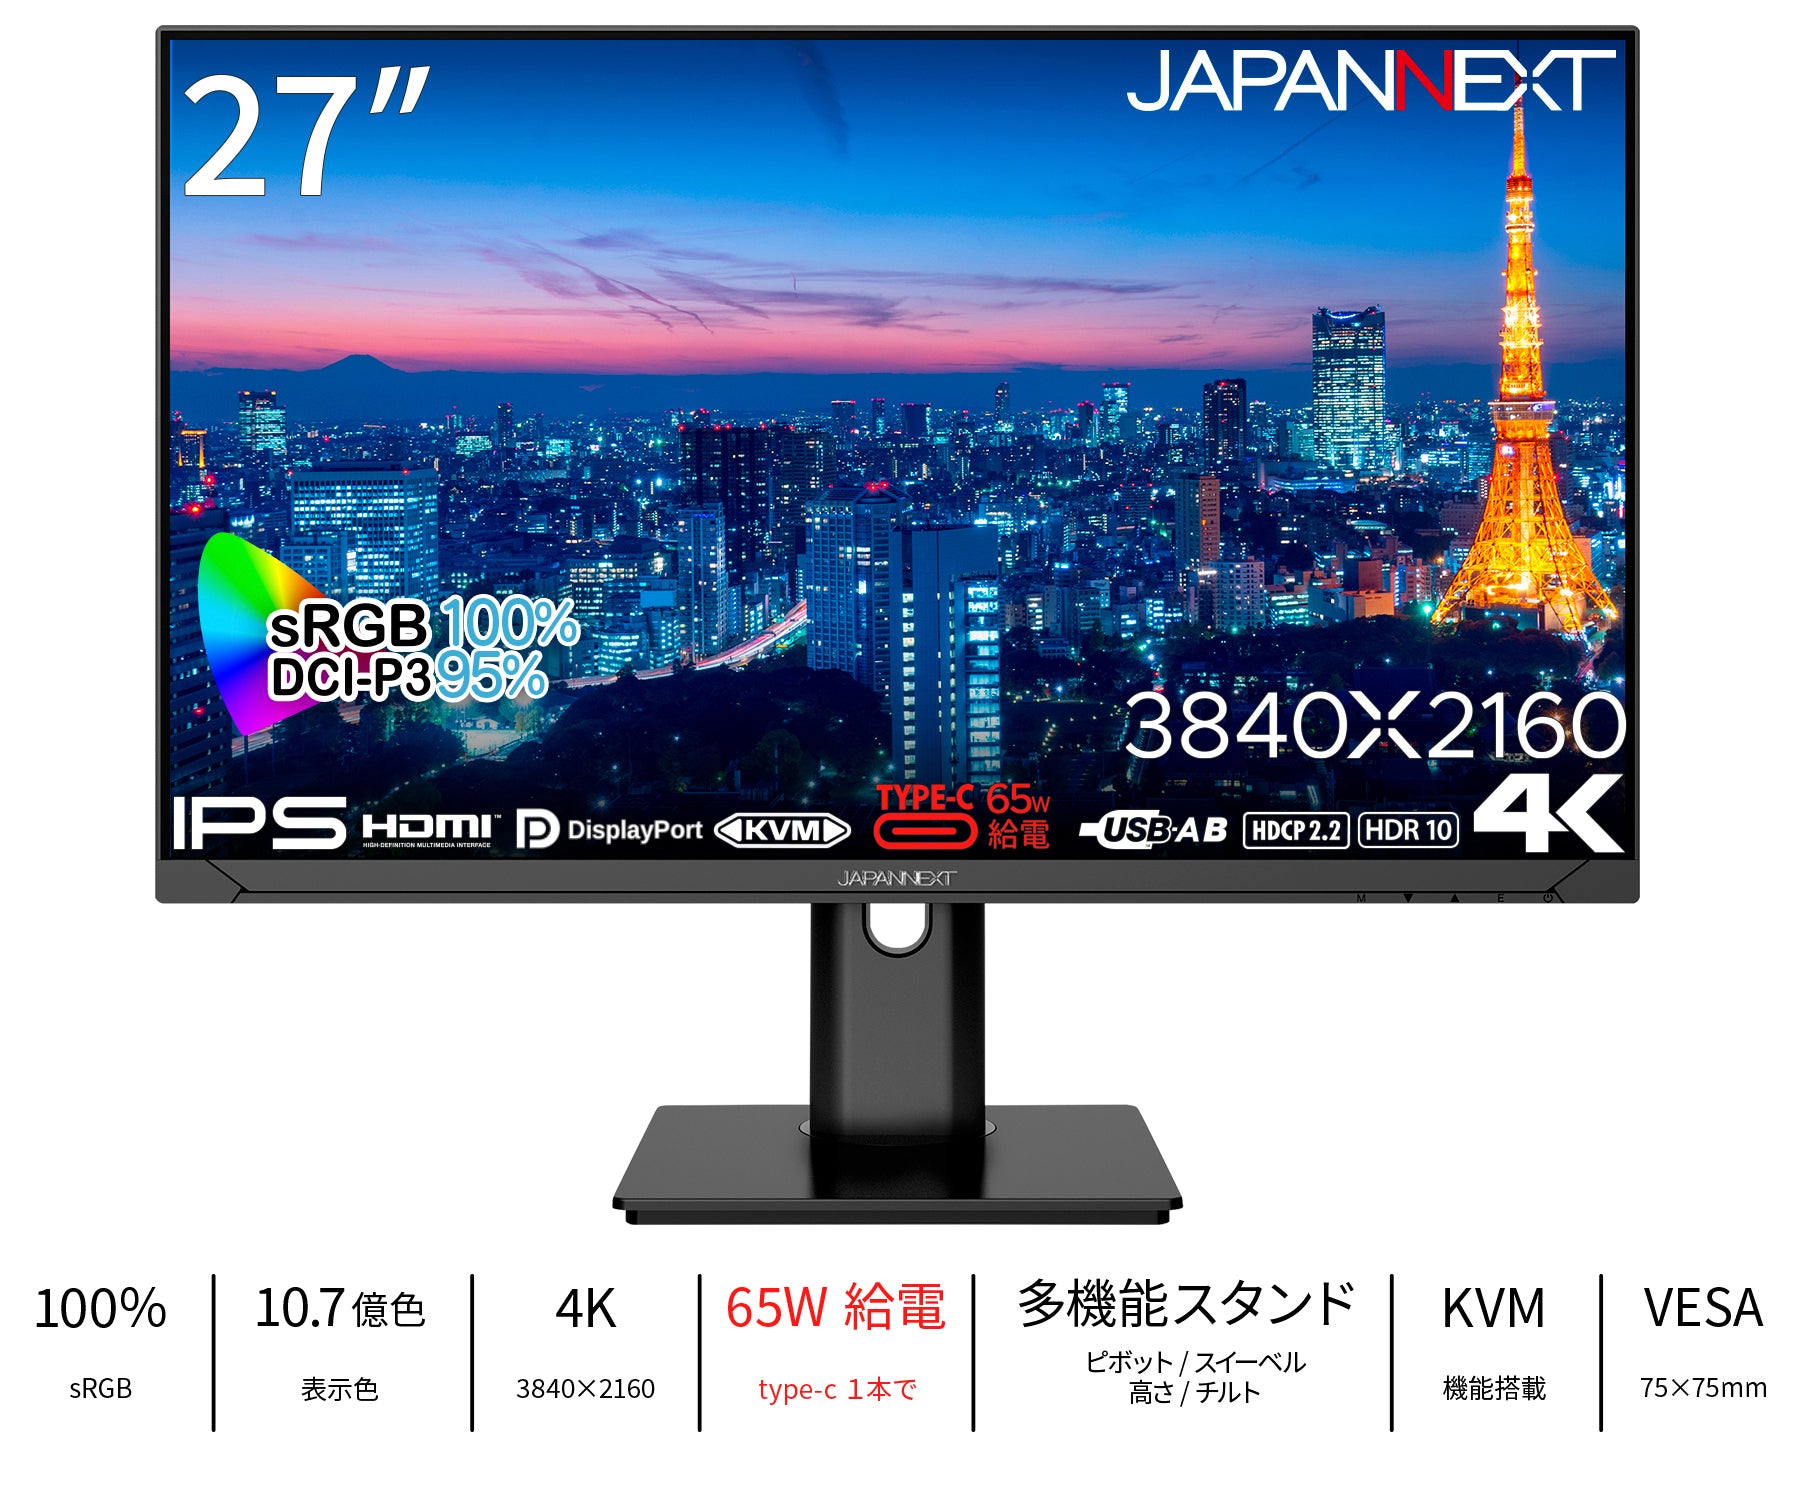 ヤマダデンキ限定】JAPANNEXT 27インチ IPSパネル搭載 4K(3840x2160 